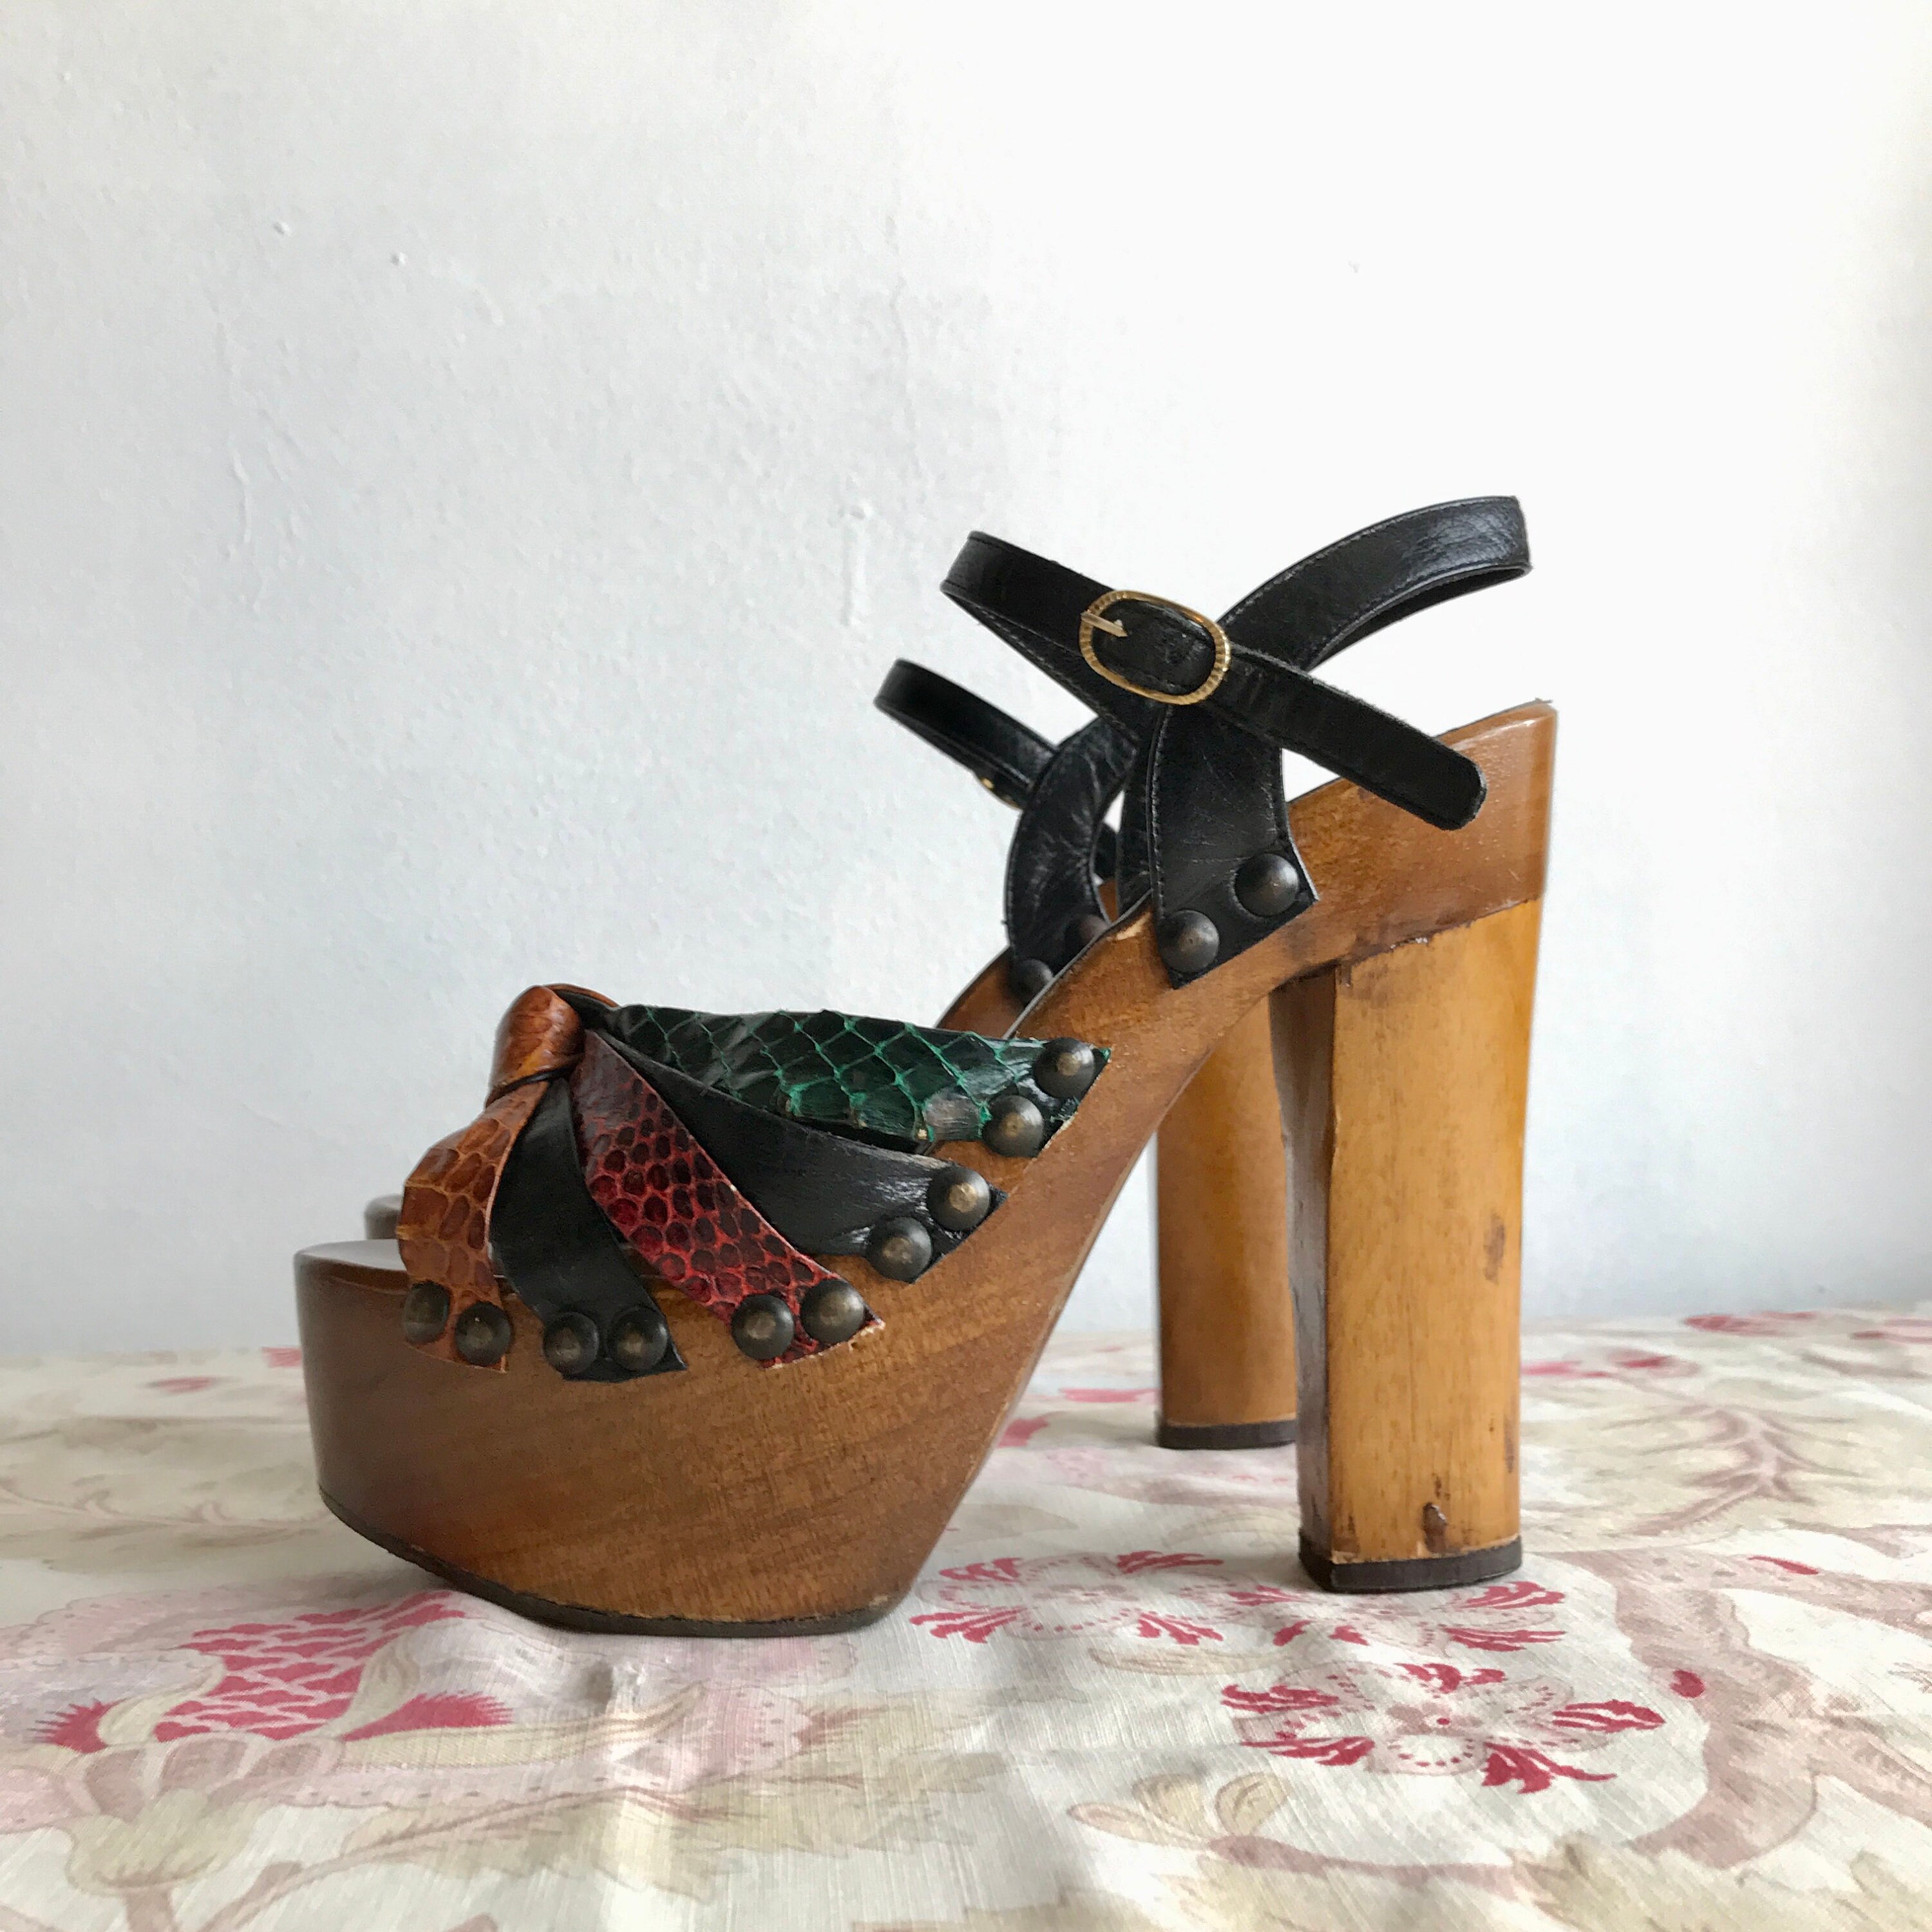 Vintage 1970s Platform Sandals / 70s Studded Wooden Shoes - Etsy